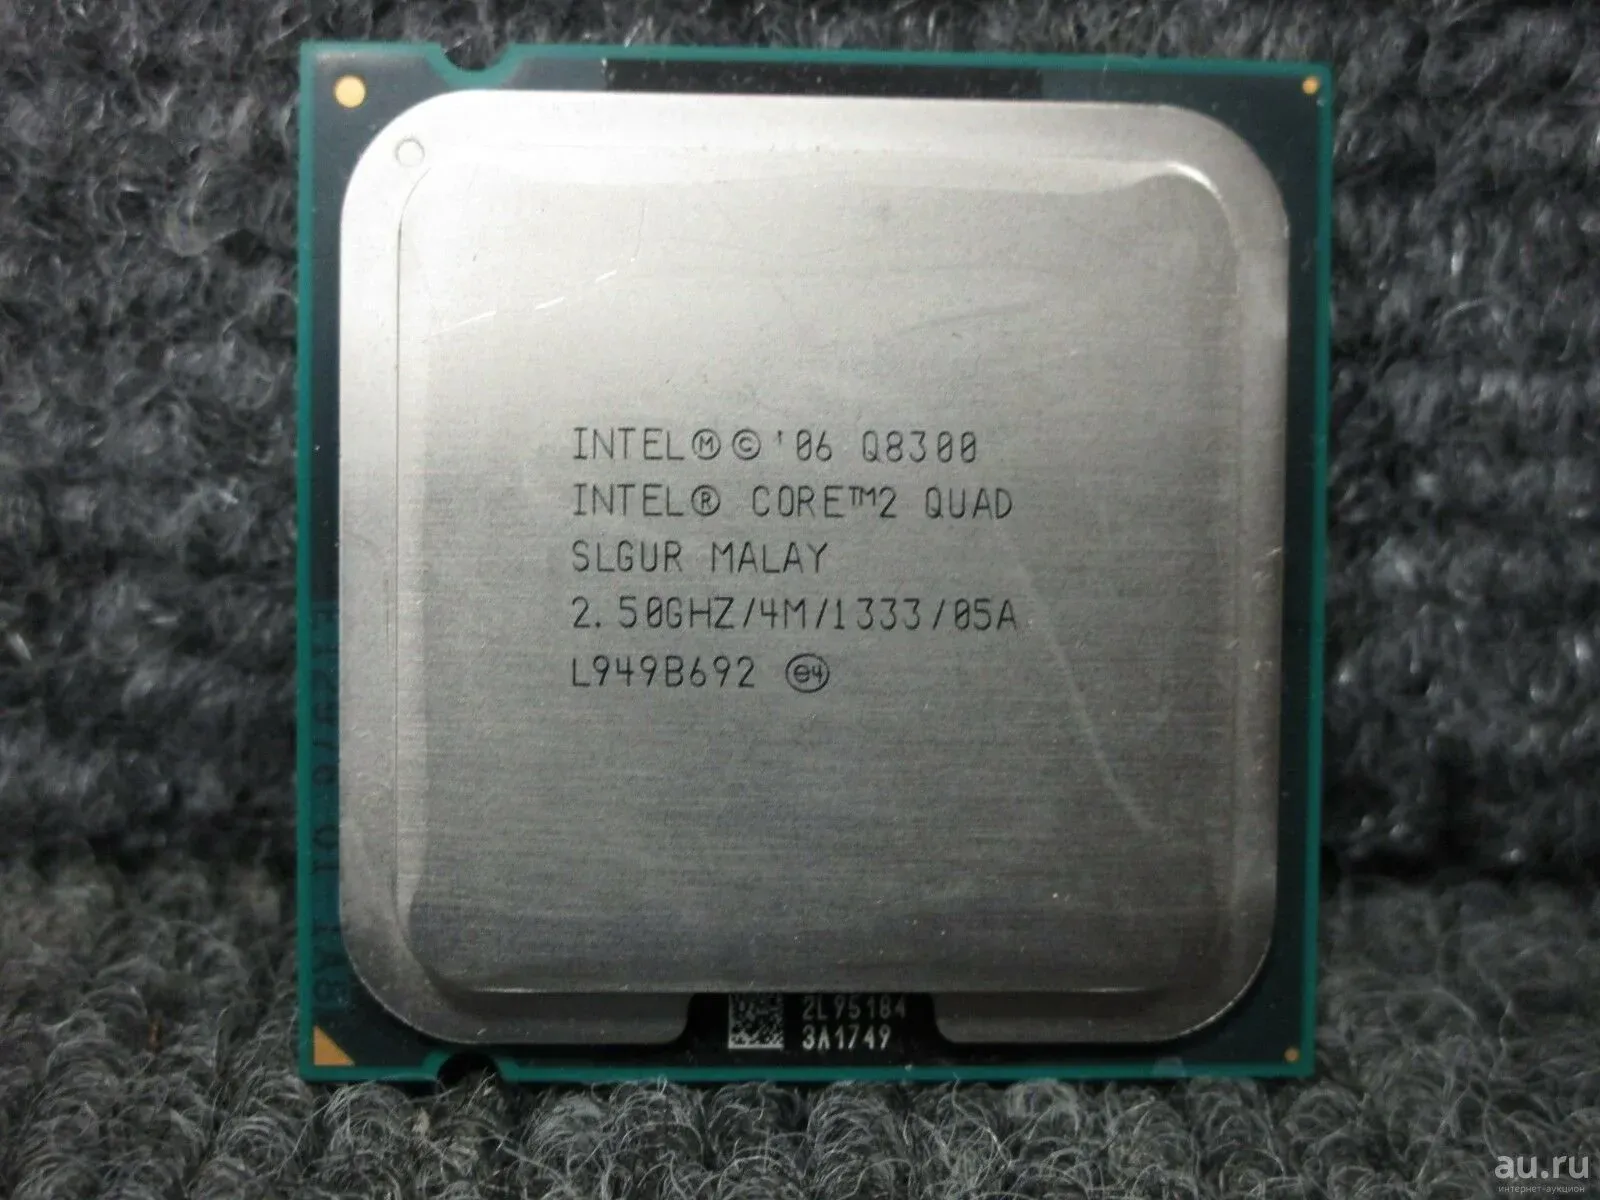 Интел quad. Core 2 Quad q8300. Процессор Intel Core 2 Quad q8300 2.5GHZ. Процессор Intel Core q8400. Интел кор 2 Quad SLGUR Malay.